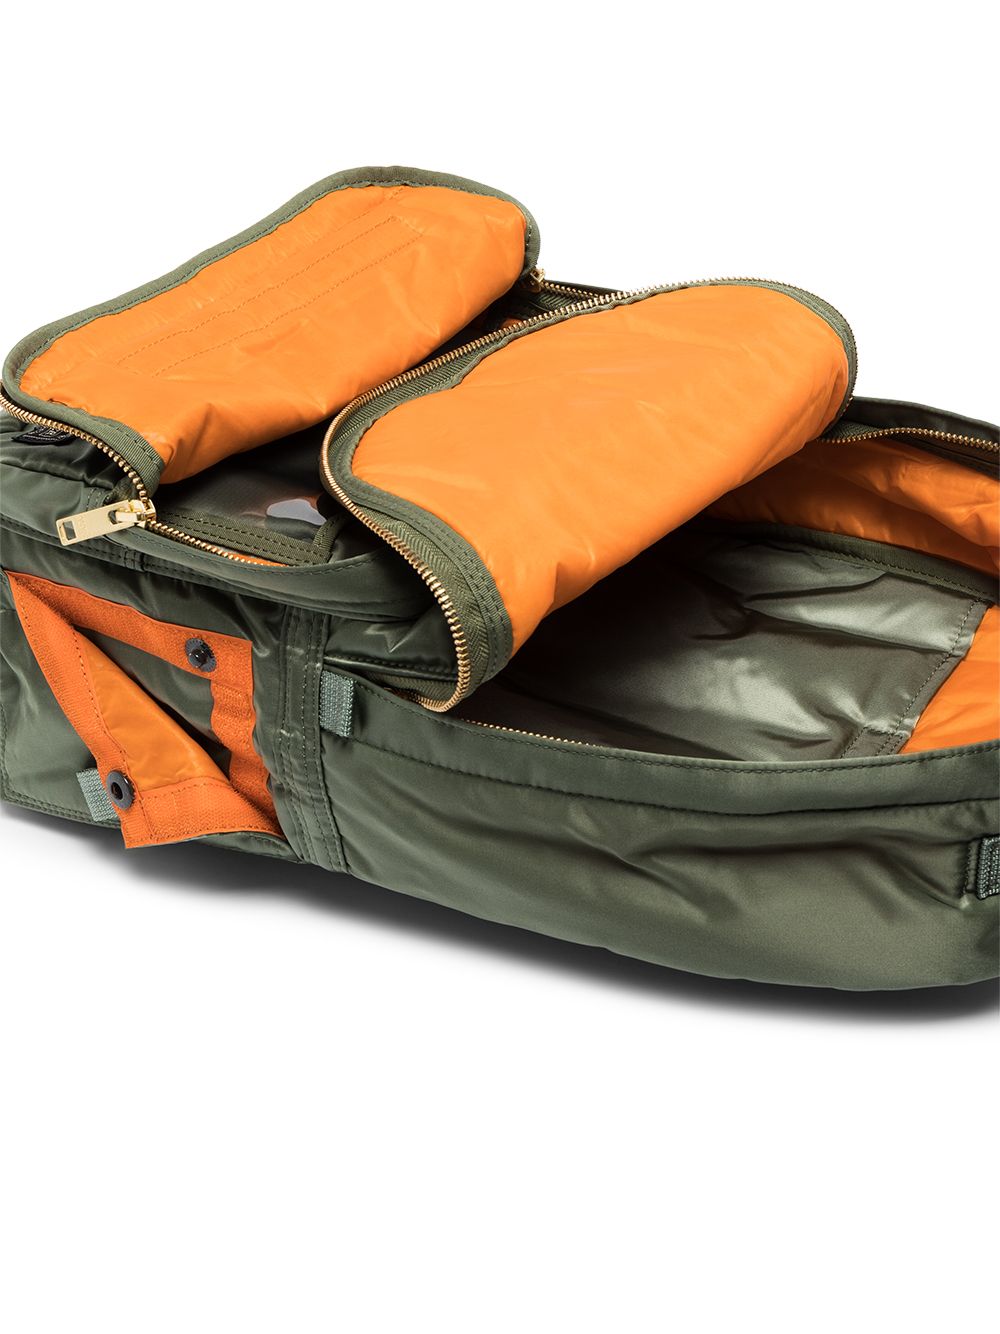 Porter-Yoshida & Co. Day Zipped Backpack - Farfetch